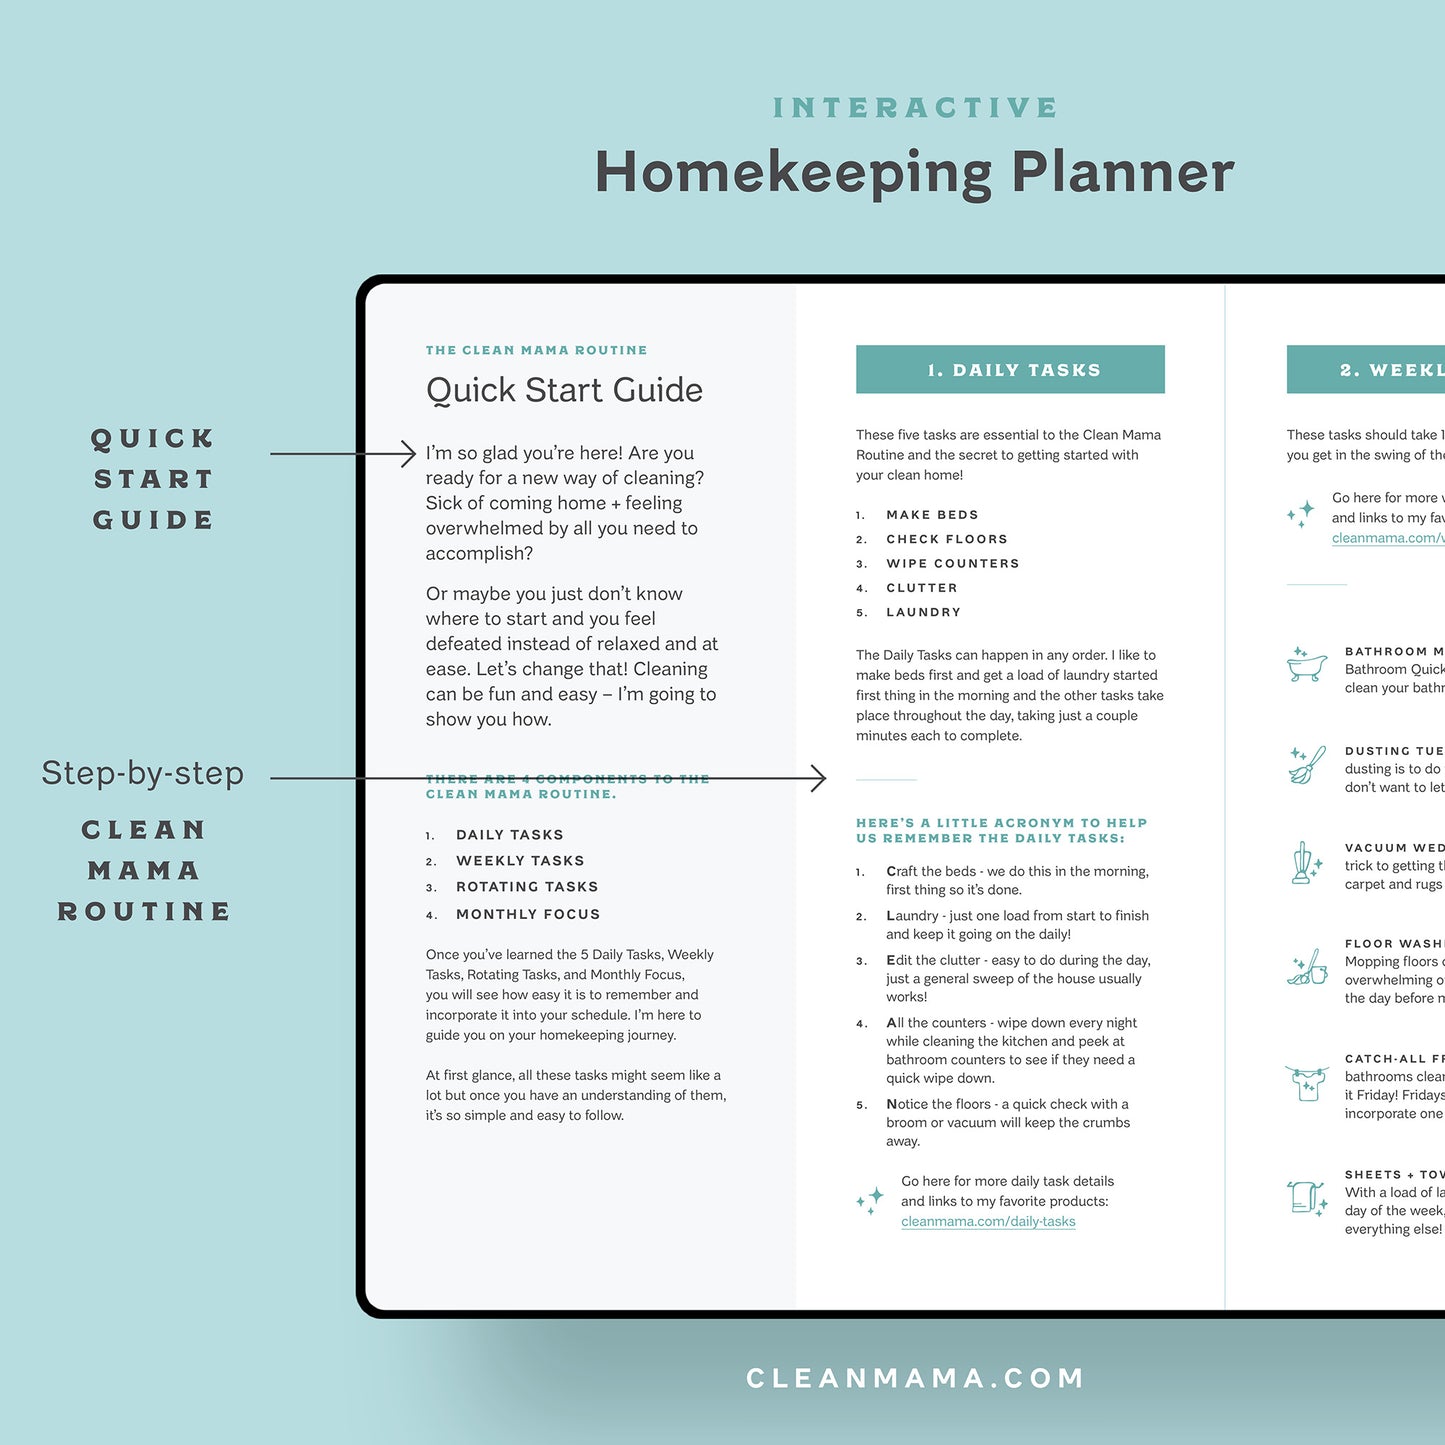 Interactive 2023 Homekeeping Planner